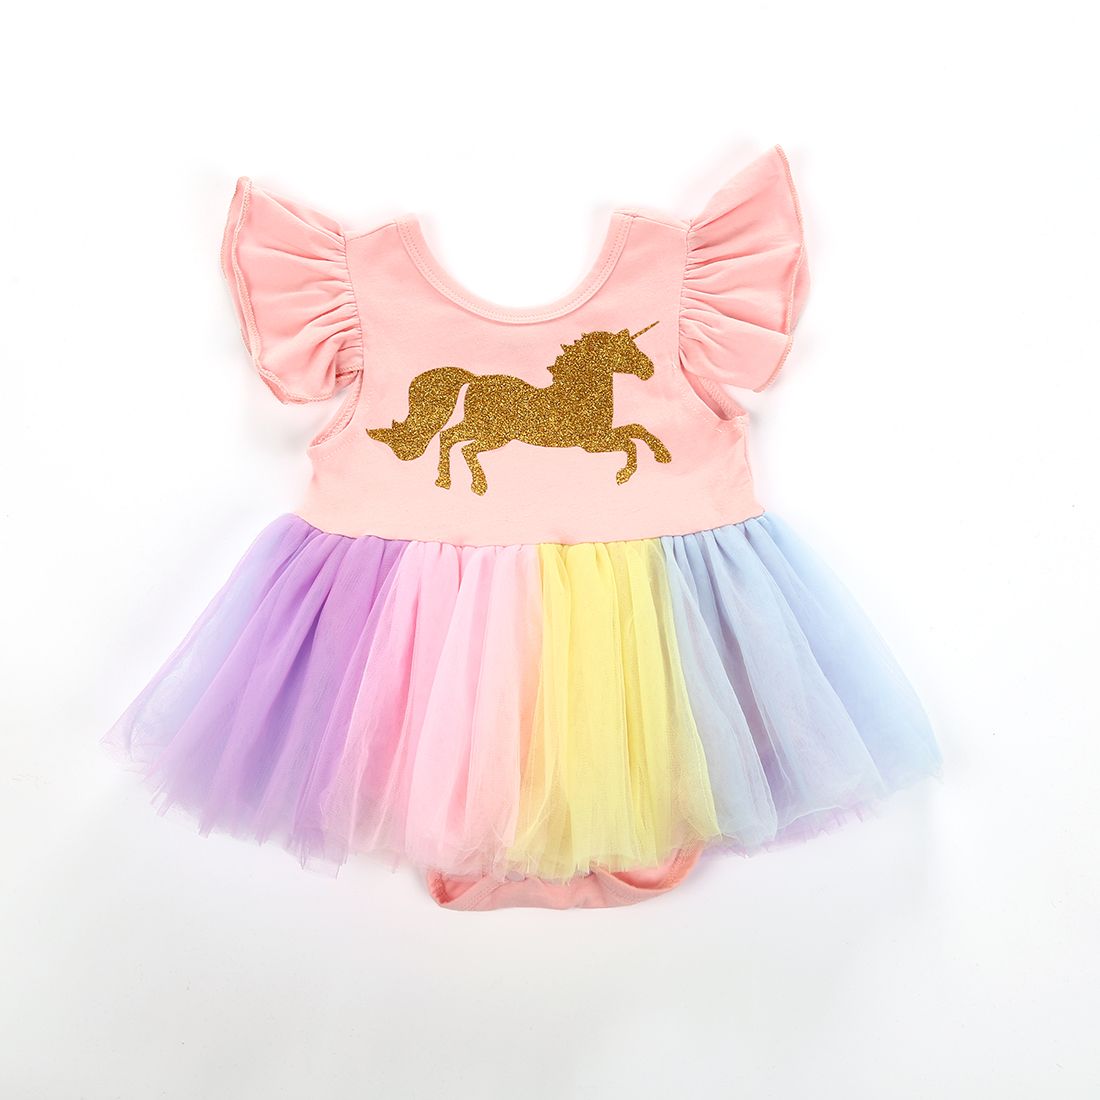 2018 Ropa Recién Nacida Del Bebé Unicornio Flying Lace Dress Romper Patchwork Colorido Lindo Del Mameluco Trajes Ropa Del Bebé De 10,16 € | DHgate